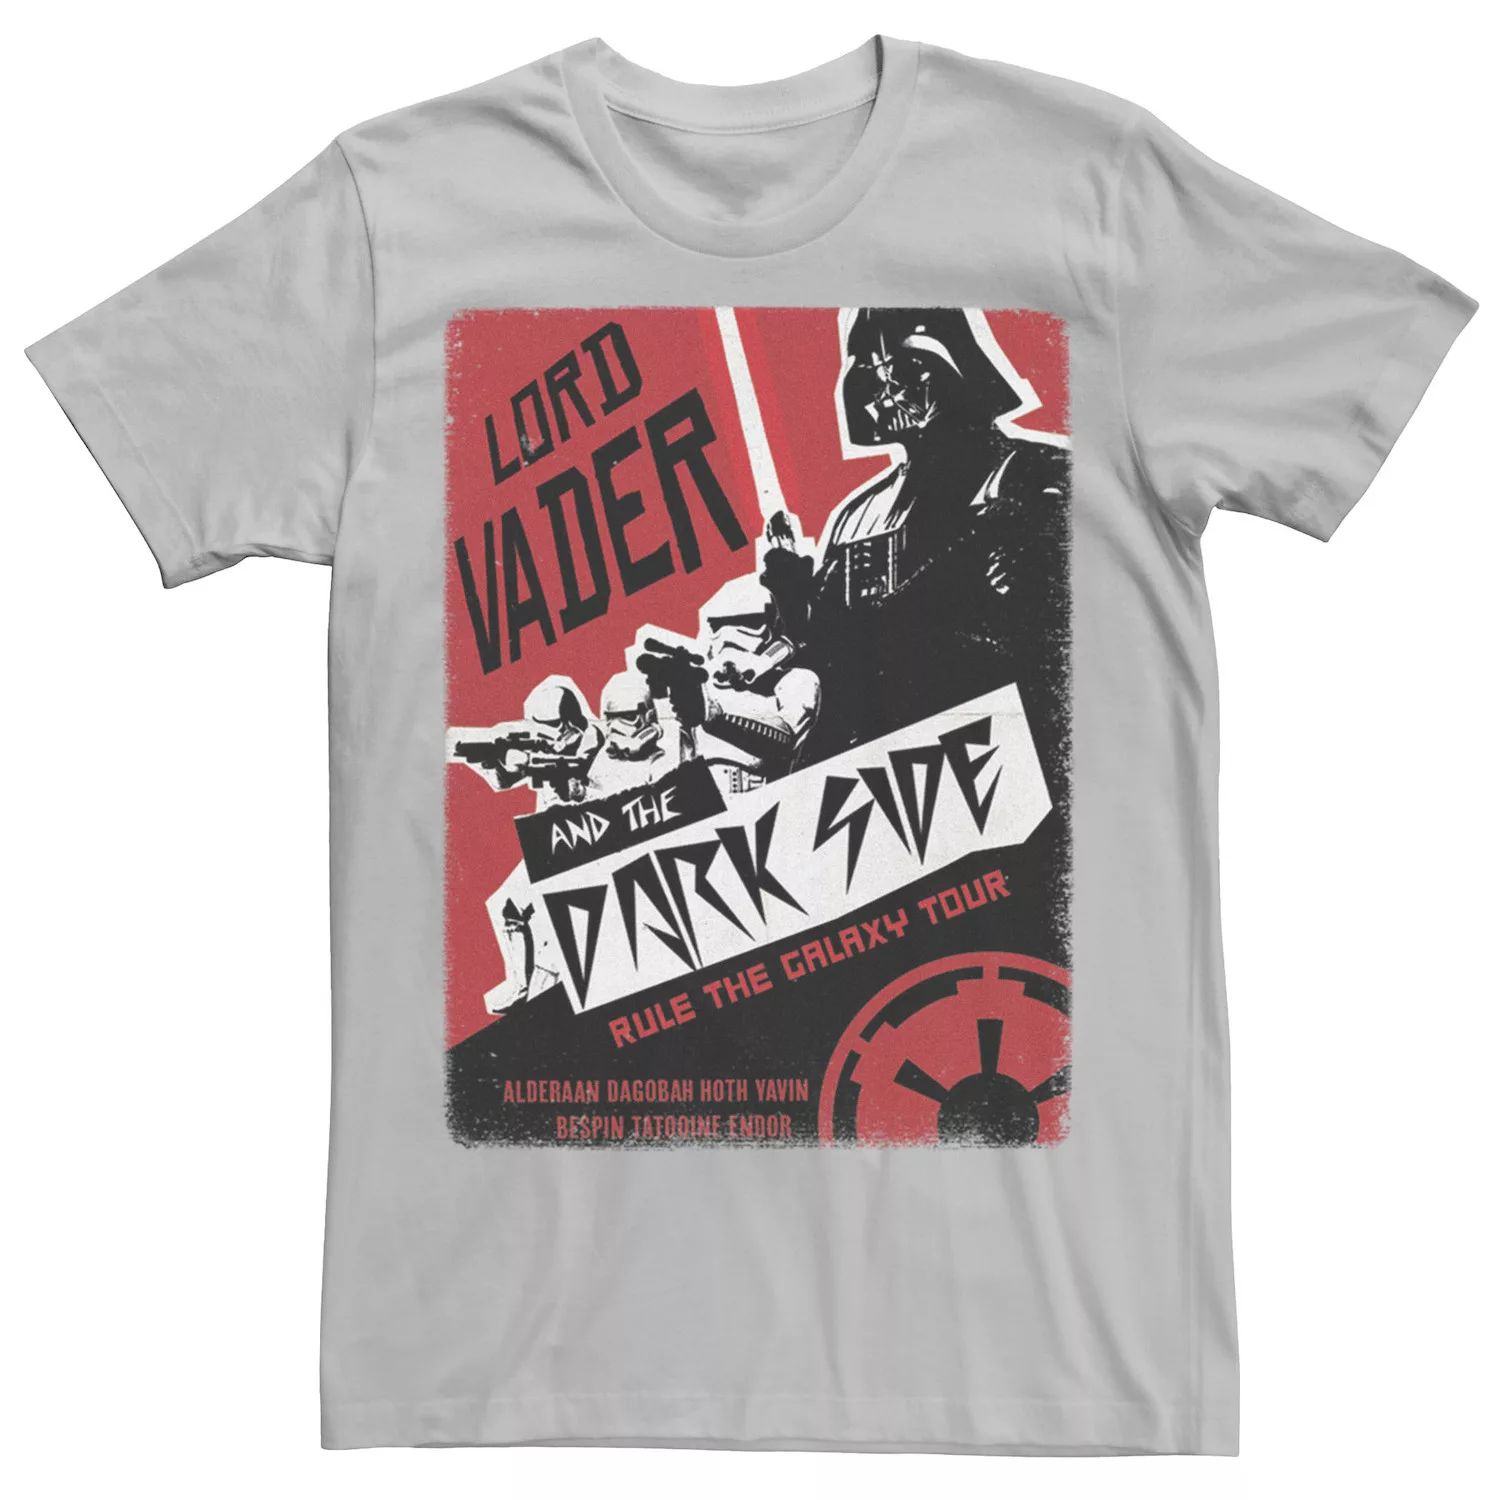 Мужская футболка с плакатом «Звездные войны» Лорда Вейдера Star Wars, серебристый